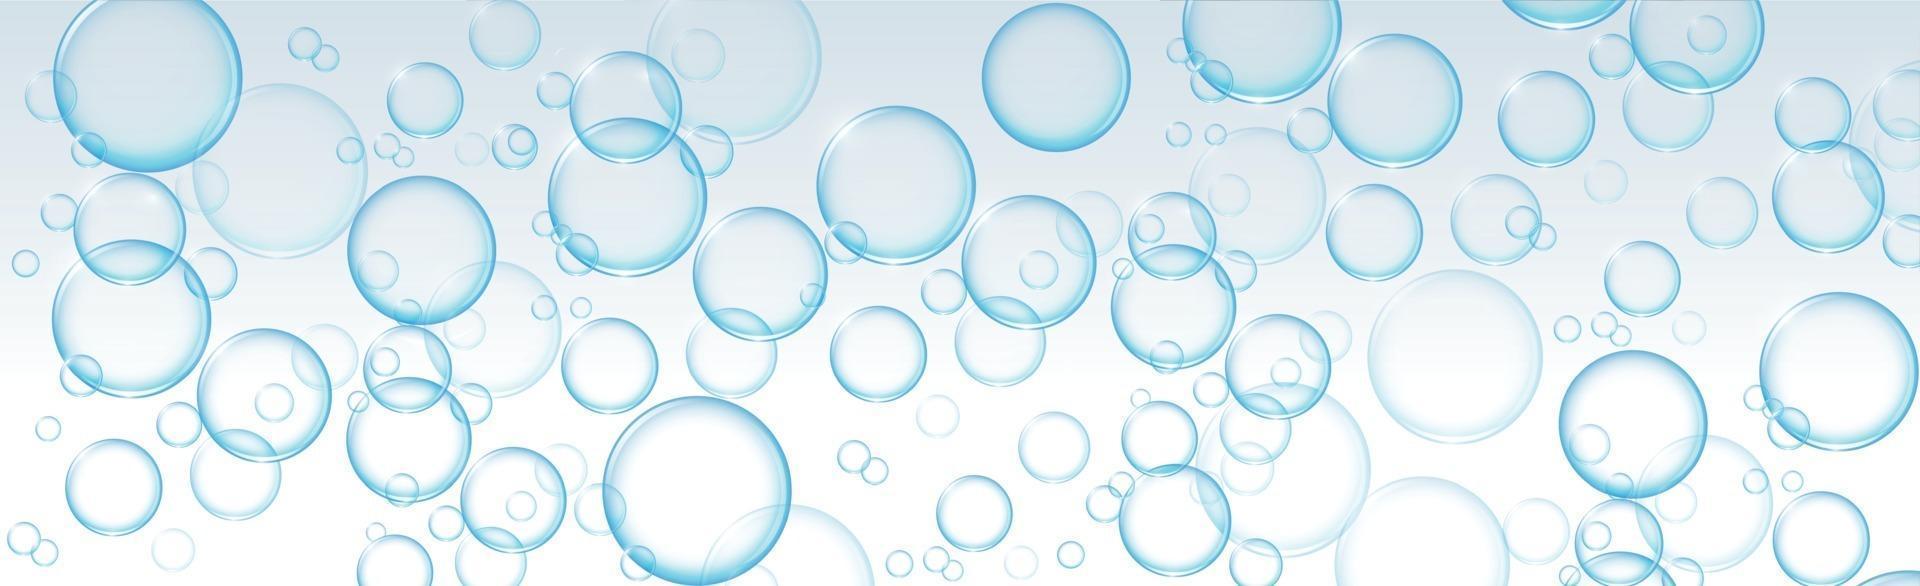 bulles d'air de différentes tailles sur fond clair vecteur